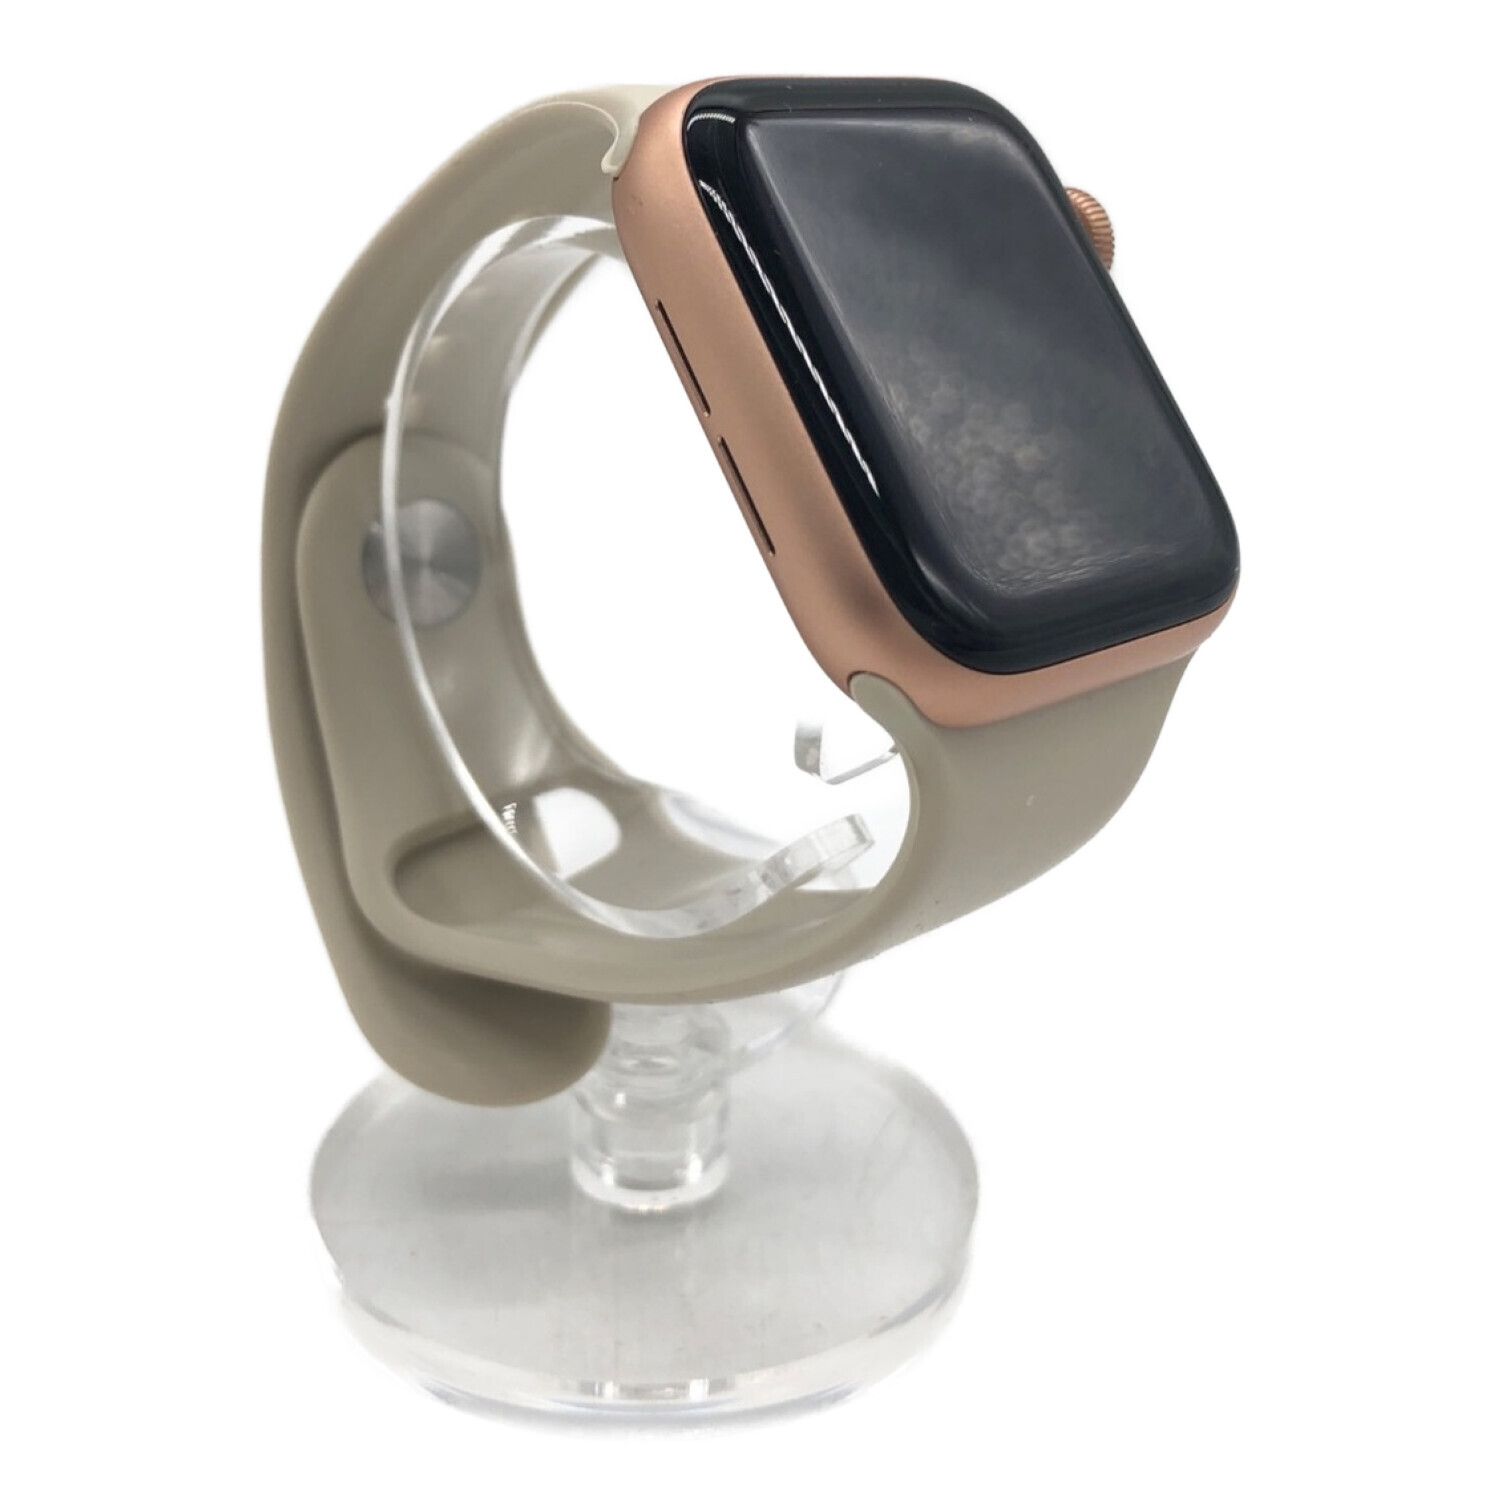 Apple (アップル) Apple Watch SE ゴールドアルミニウム/スポーツ